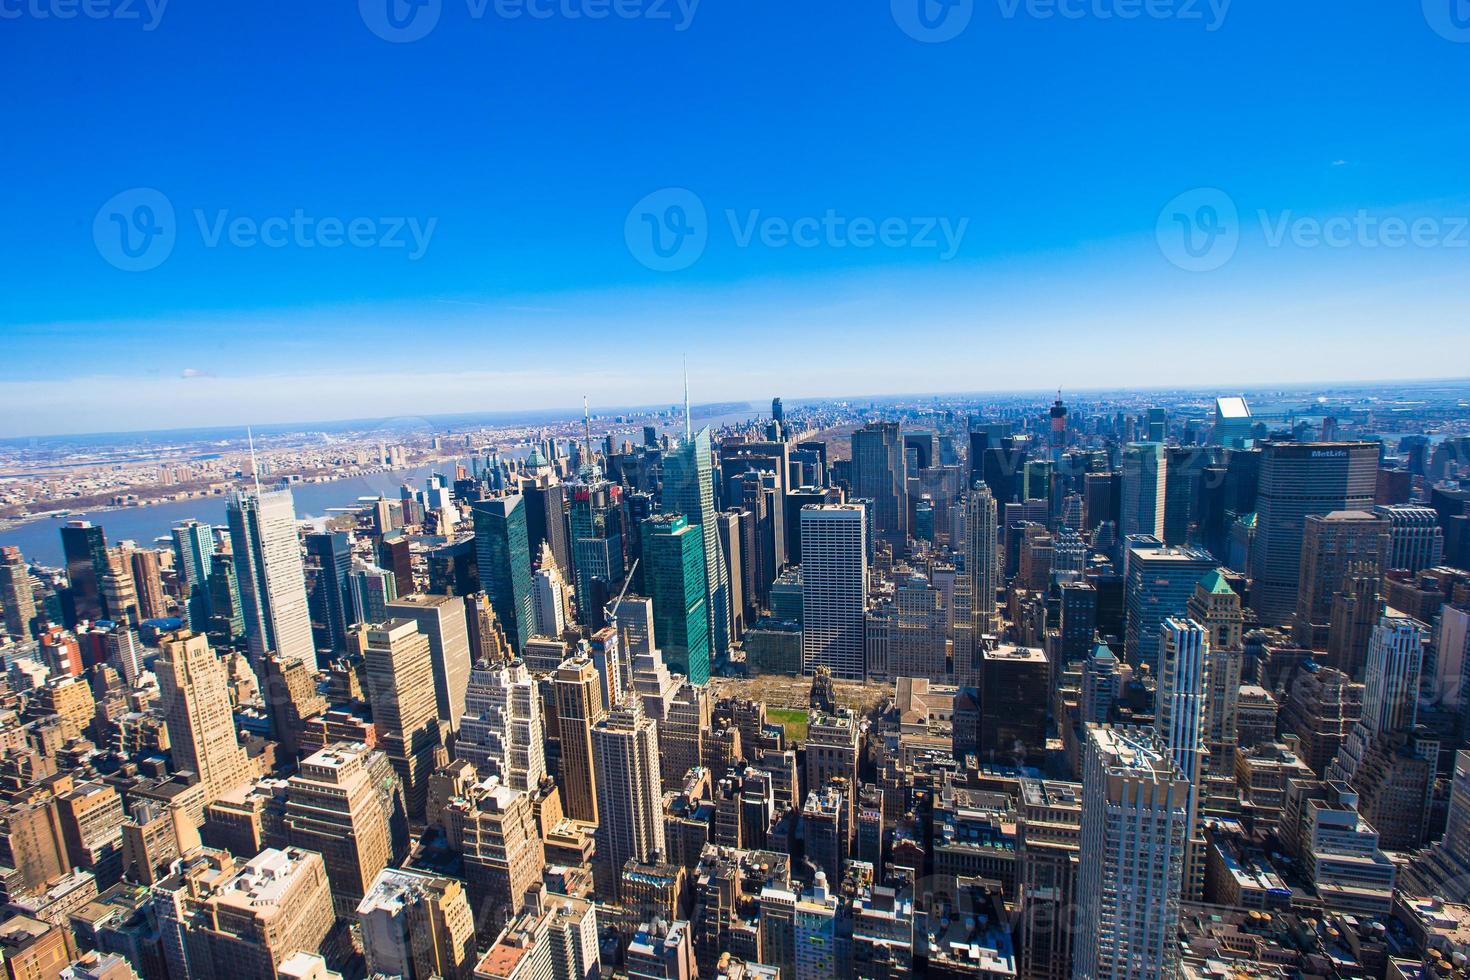 vew van Manhattan van de rijk staat gebouw, nieuw york foto